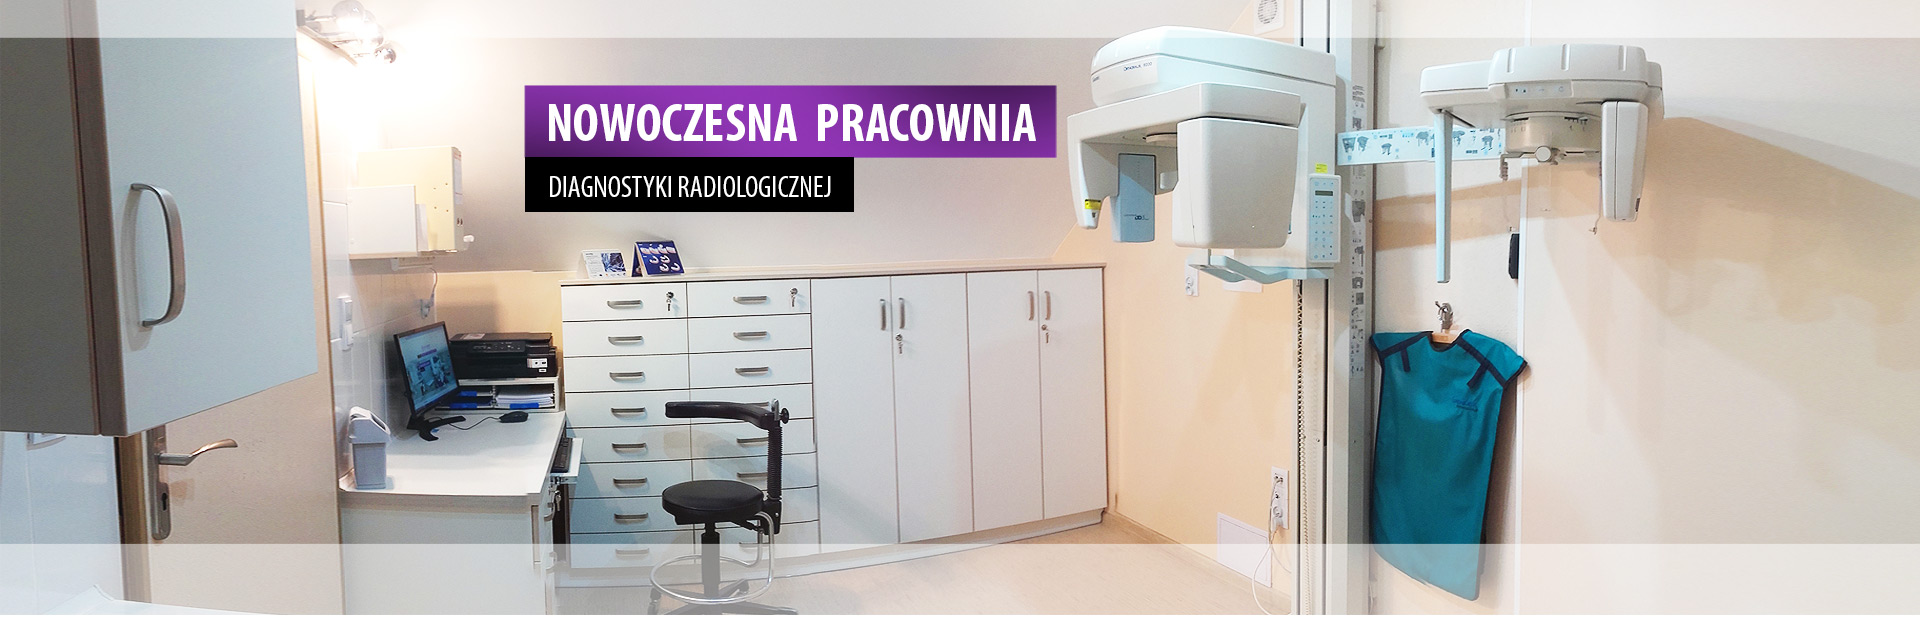 Nowoczesna pracownia diagnostyki radiologicznej w Szprotawie